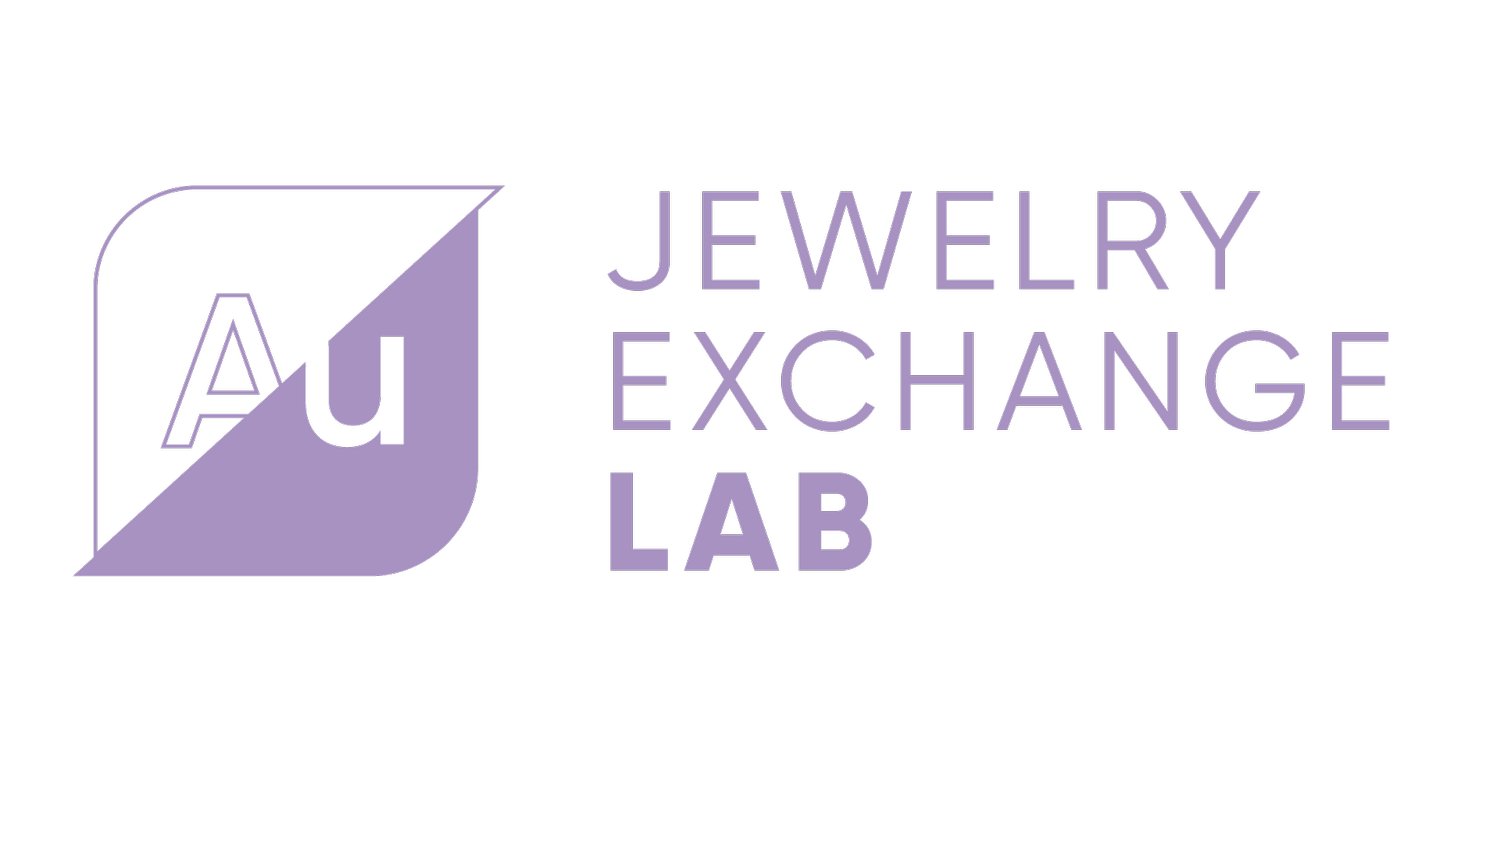 Au Jewelry Exchange Lab